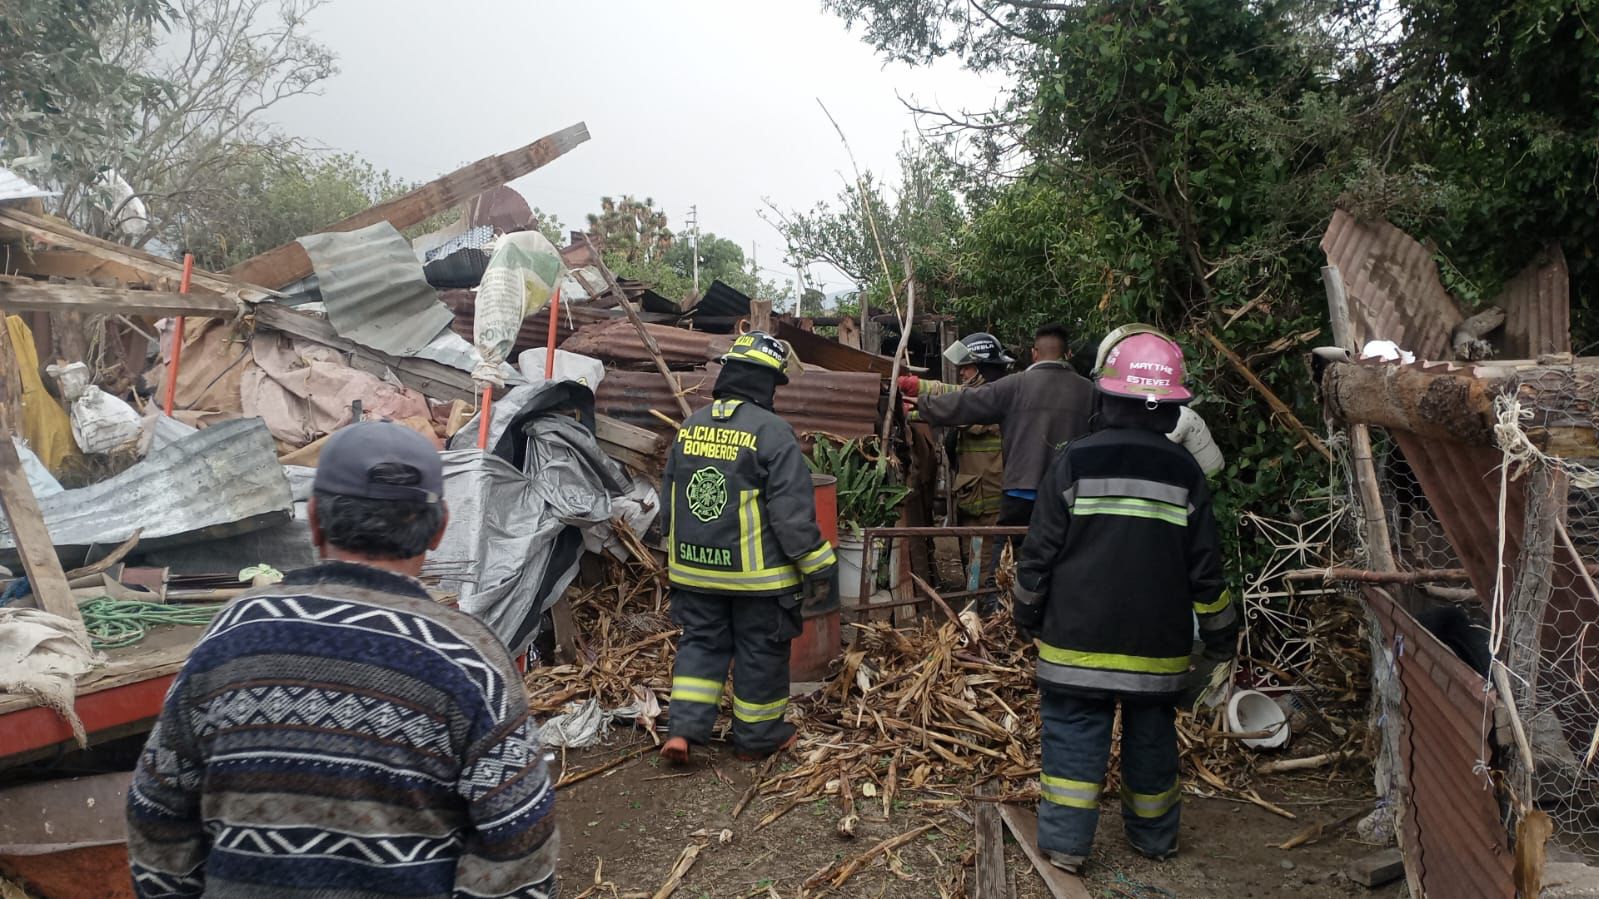 VIDEO Tornado deja cuatro viviendas afectadas en Ciudad Serdán